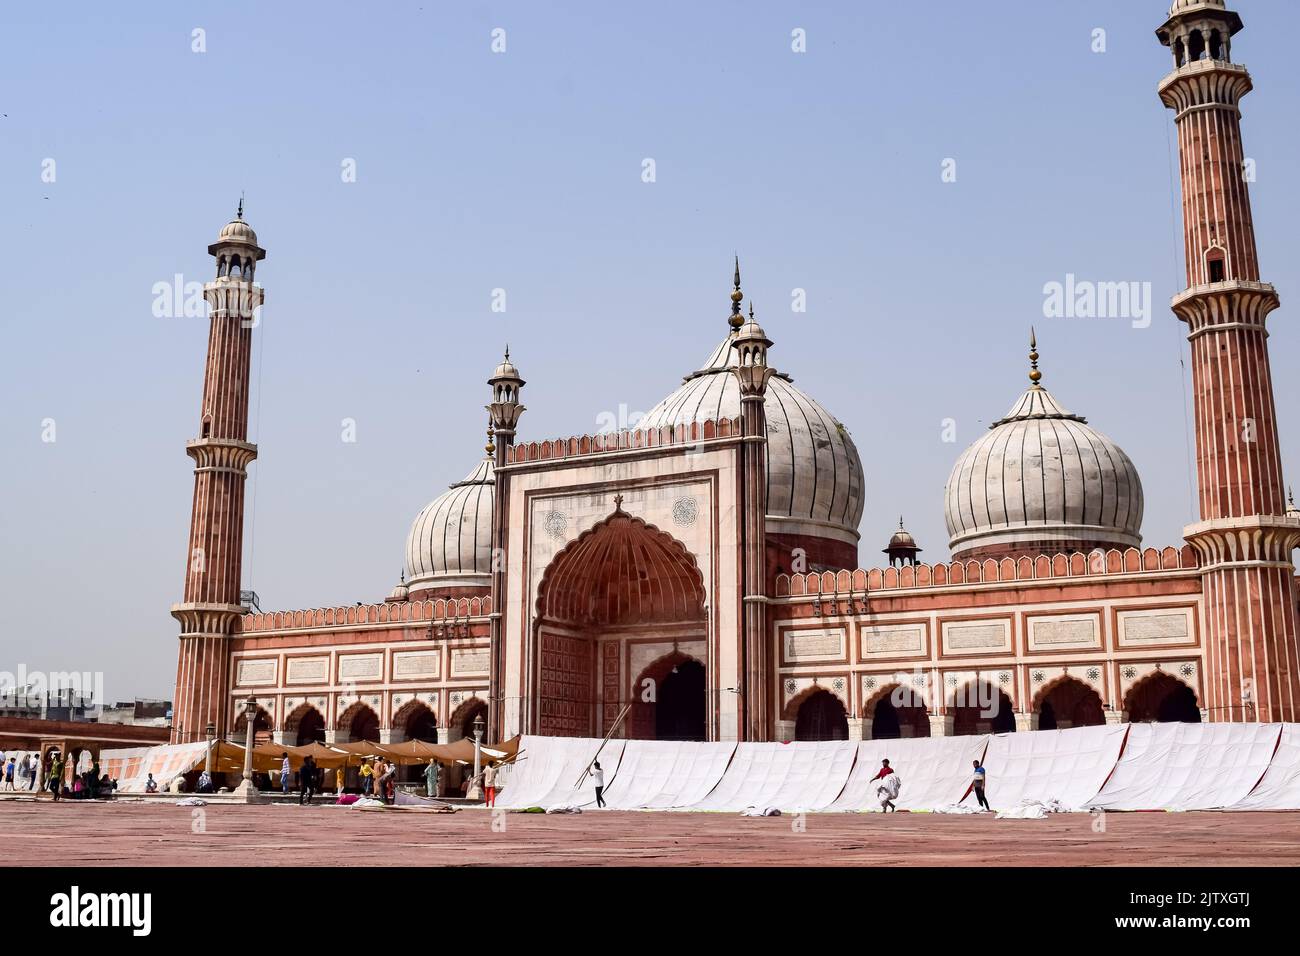 Détail architectural de la mosquée Jama Masjid, Old Delhi, Inde, l'architecture spectaculaire de la mosquée du Grand Vendredi (Jama Masjid) à Delhi 6 pendant Banque D'Images